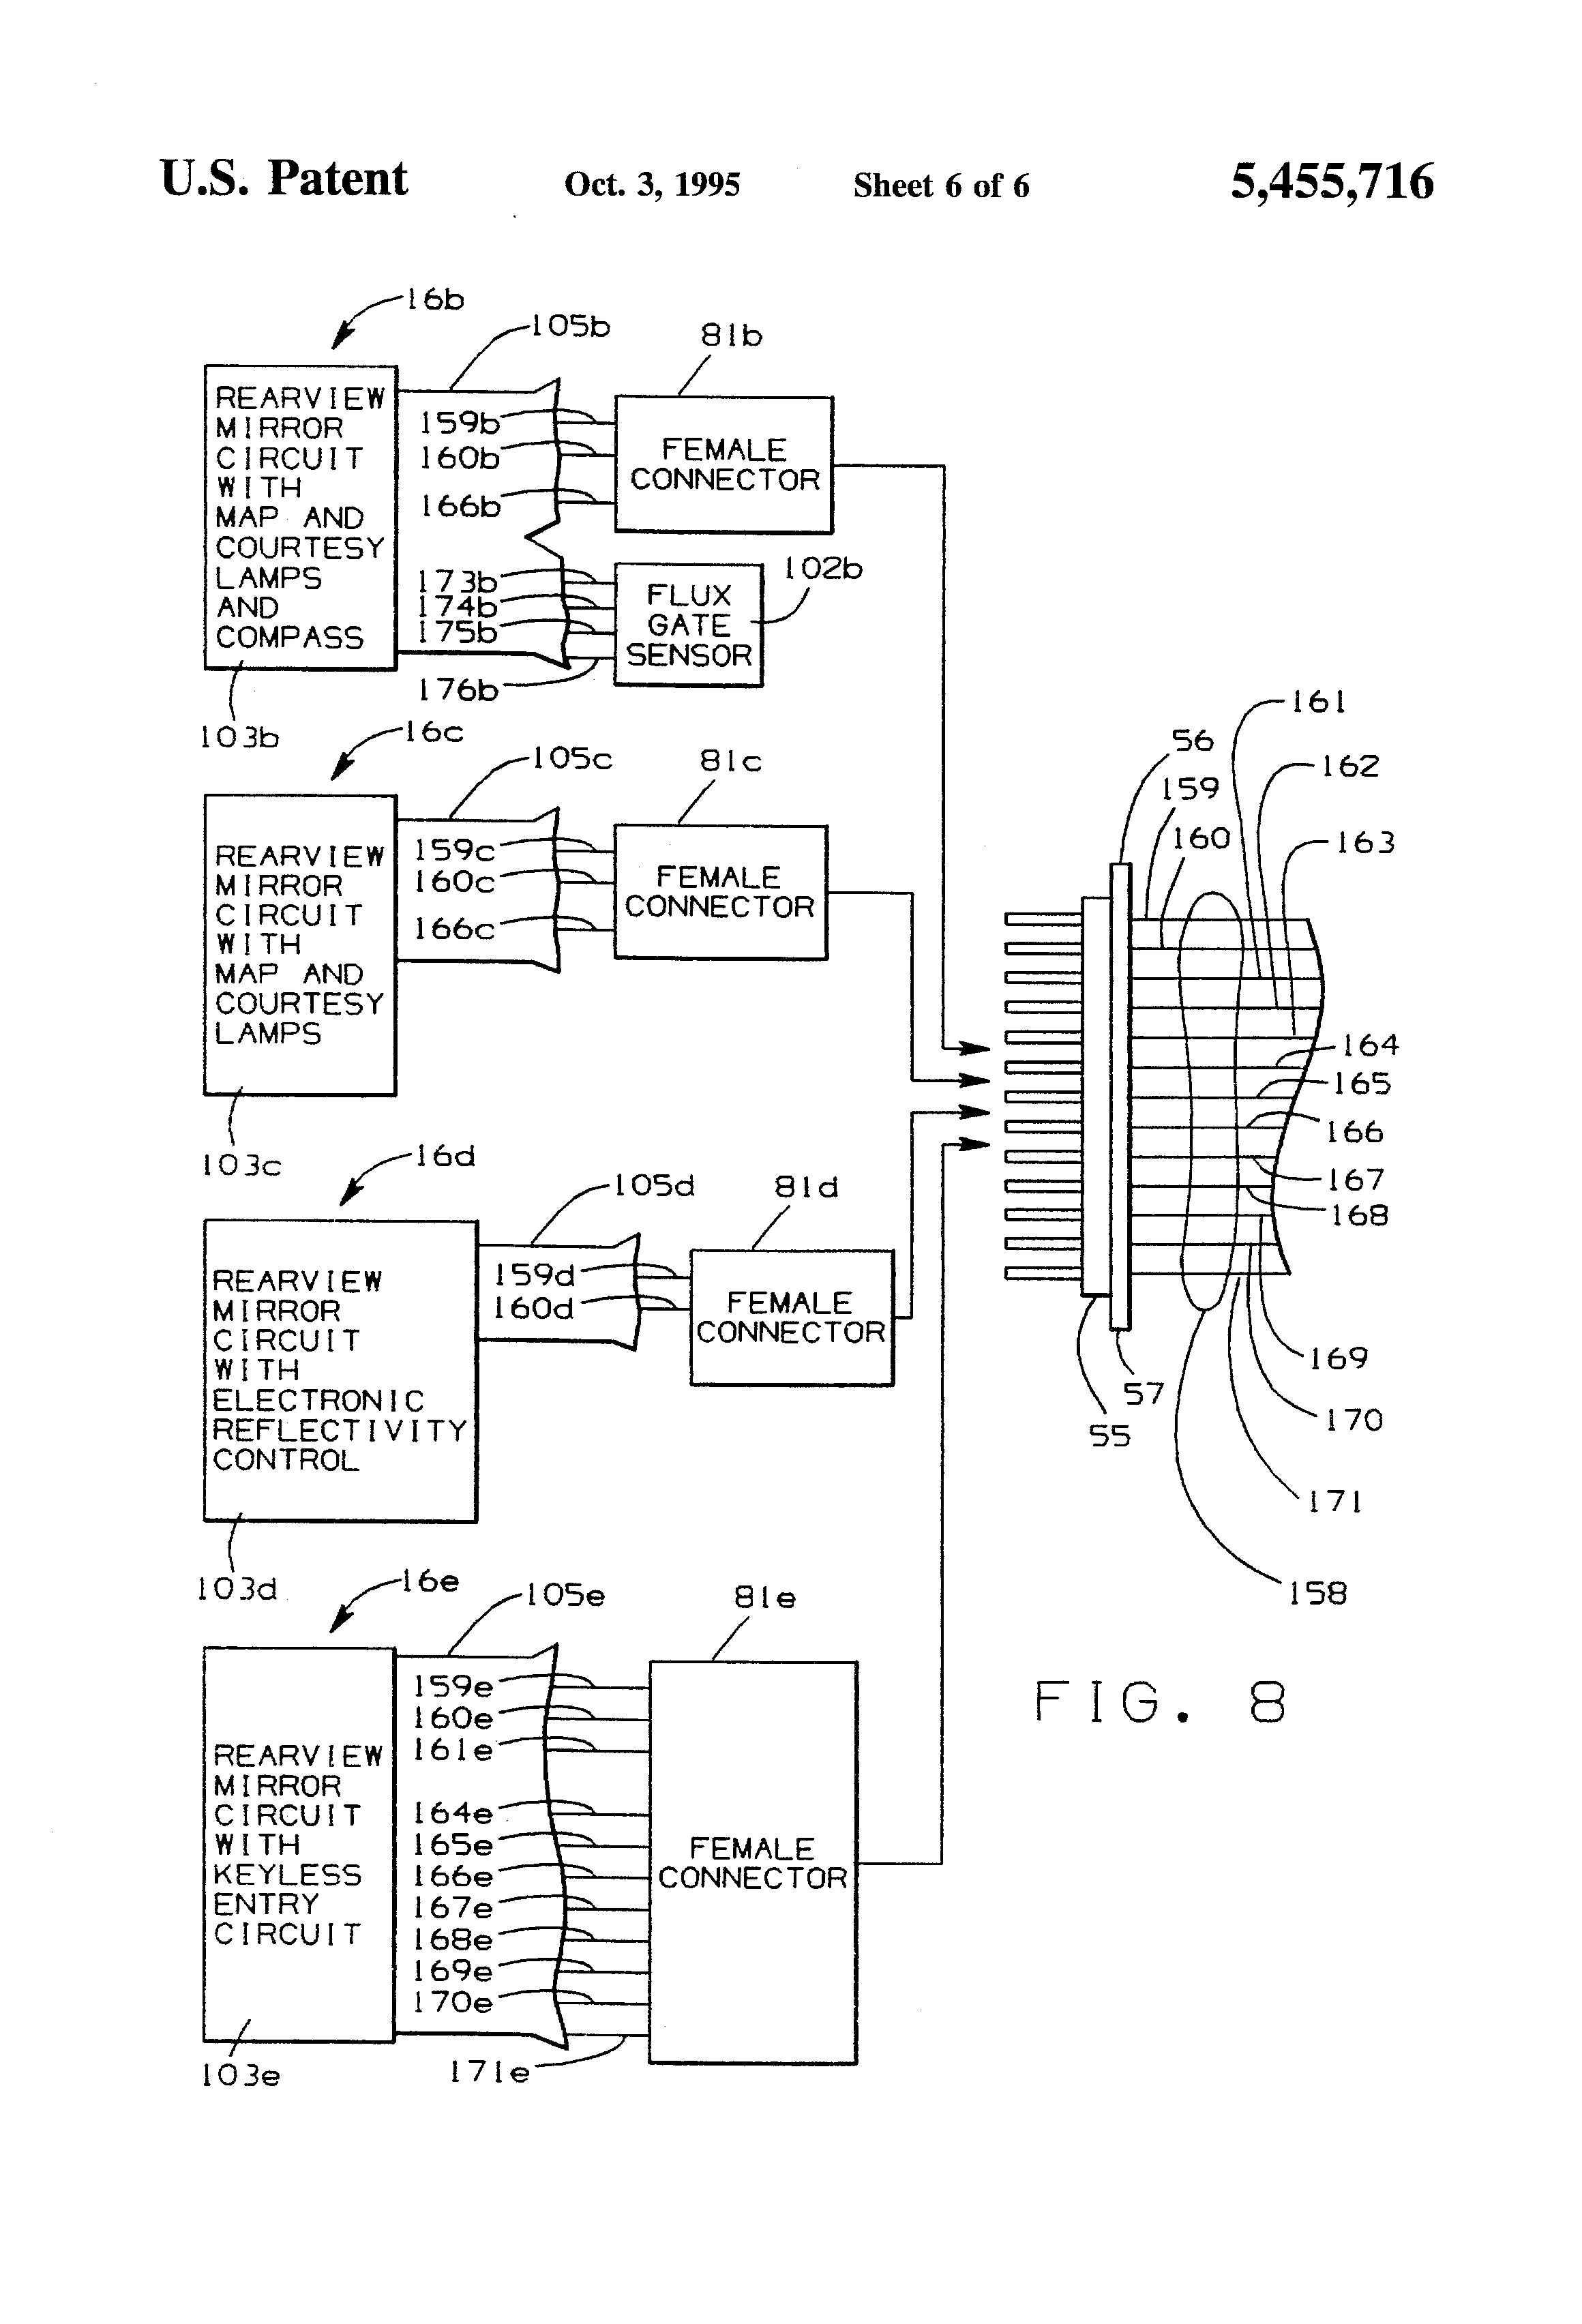 donnelly mirror wiring diagram